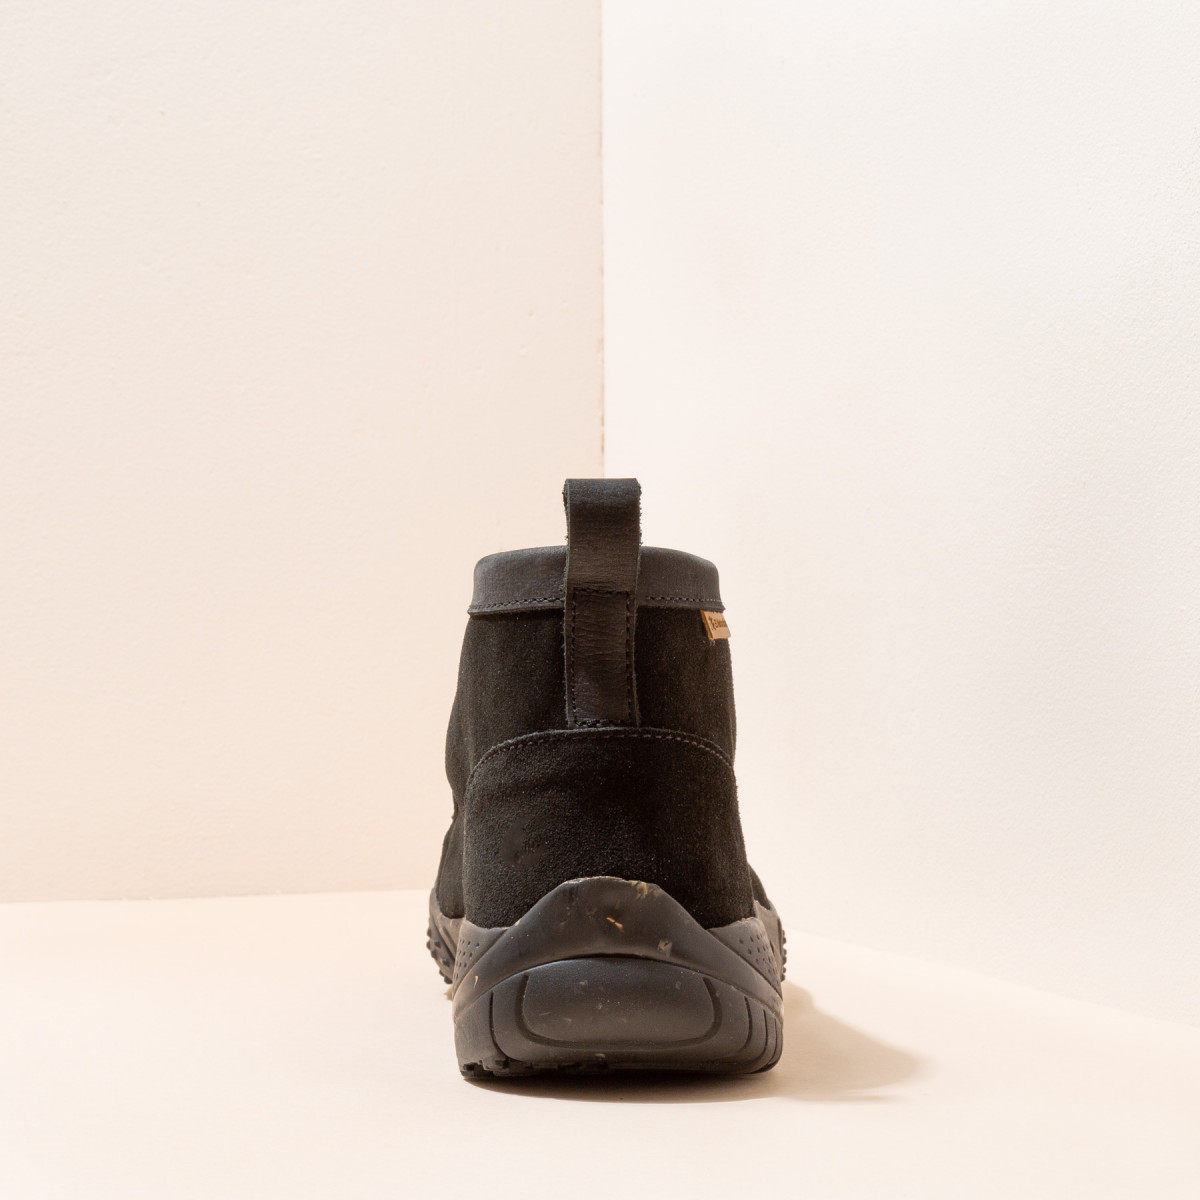 Low boots à semelles antidérapantes - Noir - El naturalista